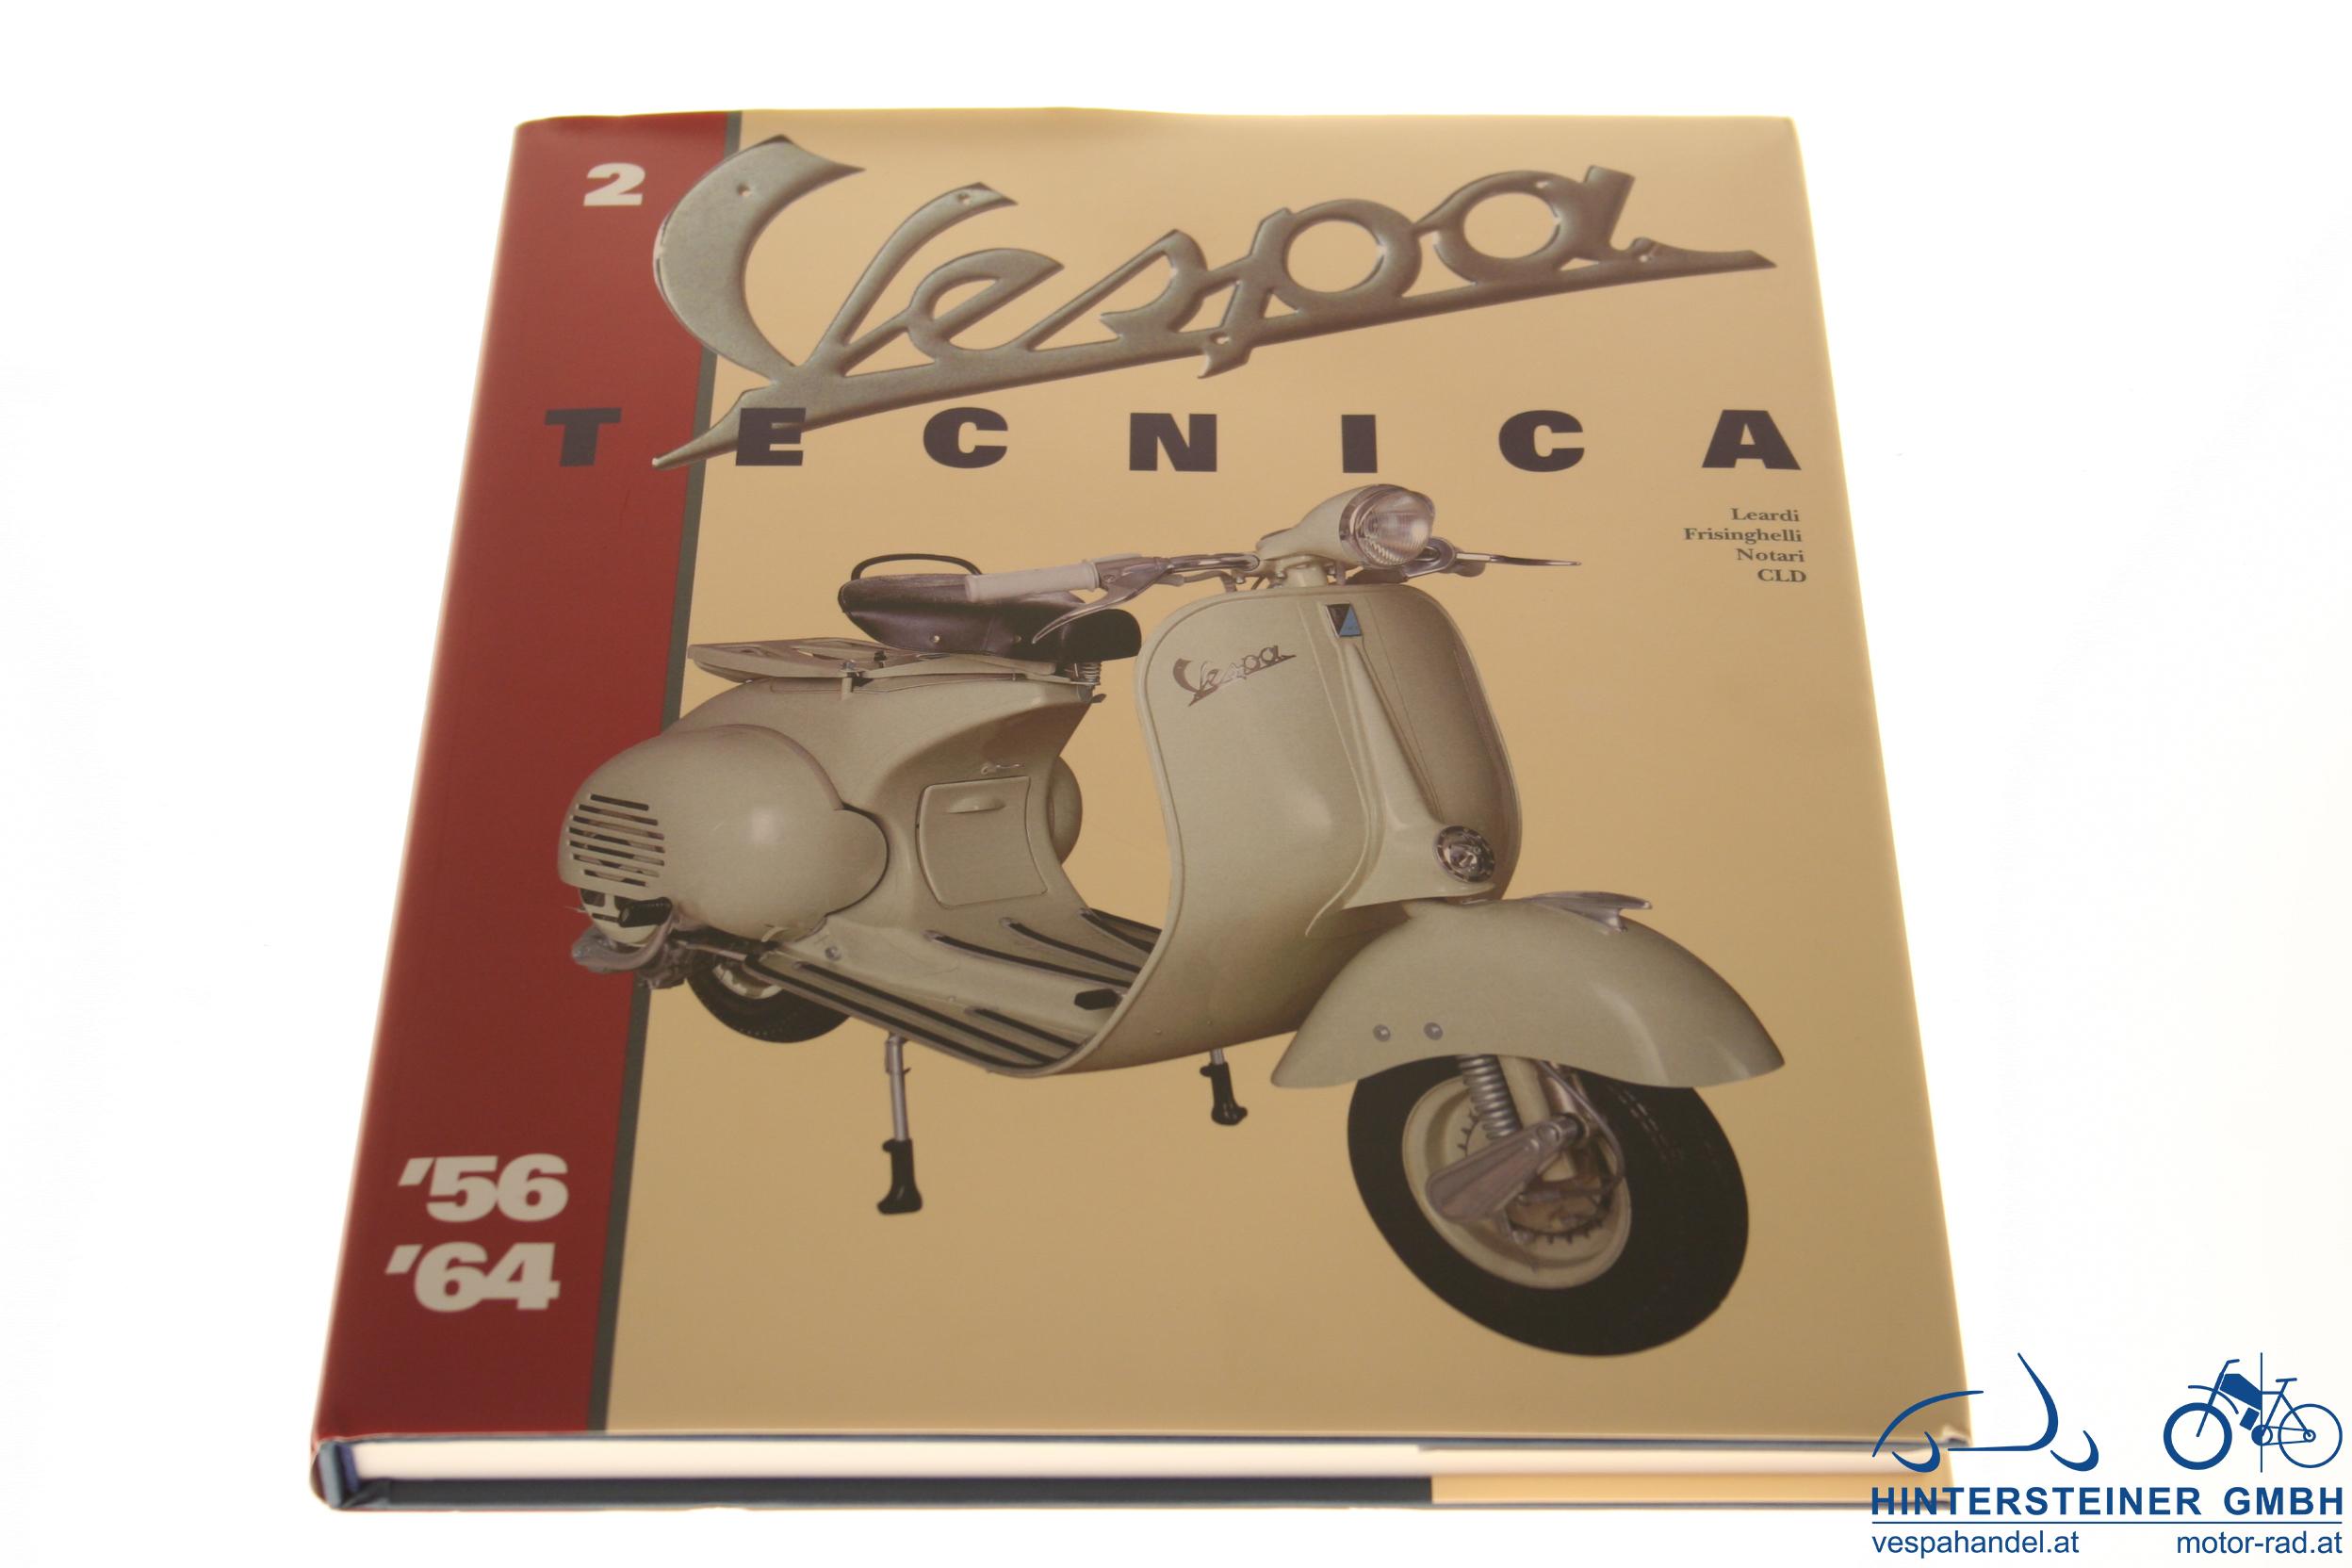 Buch Vespa "Tecnica" 2, von 1956-1964, deutsch